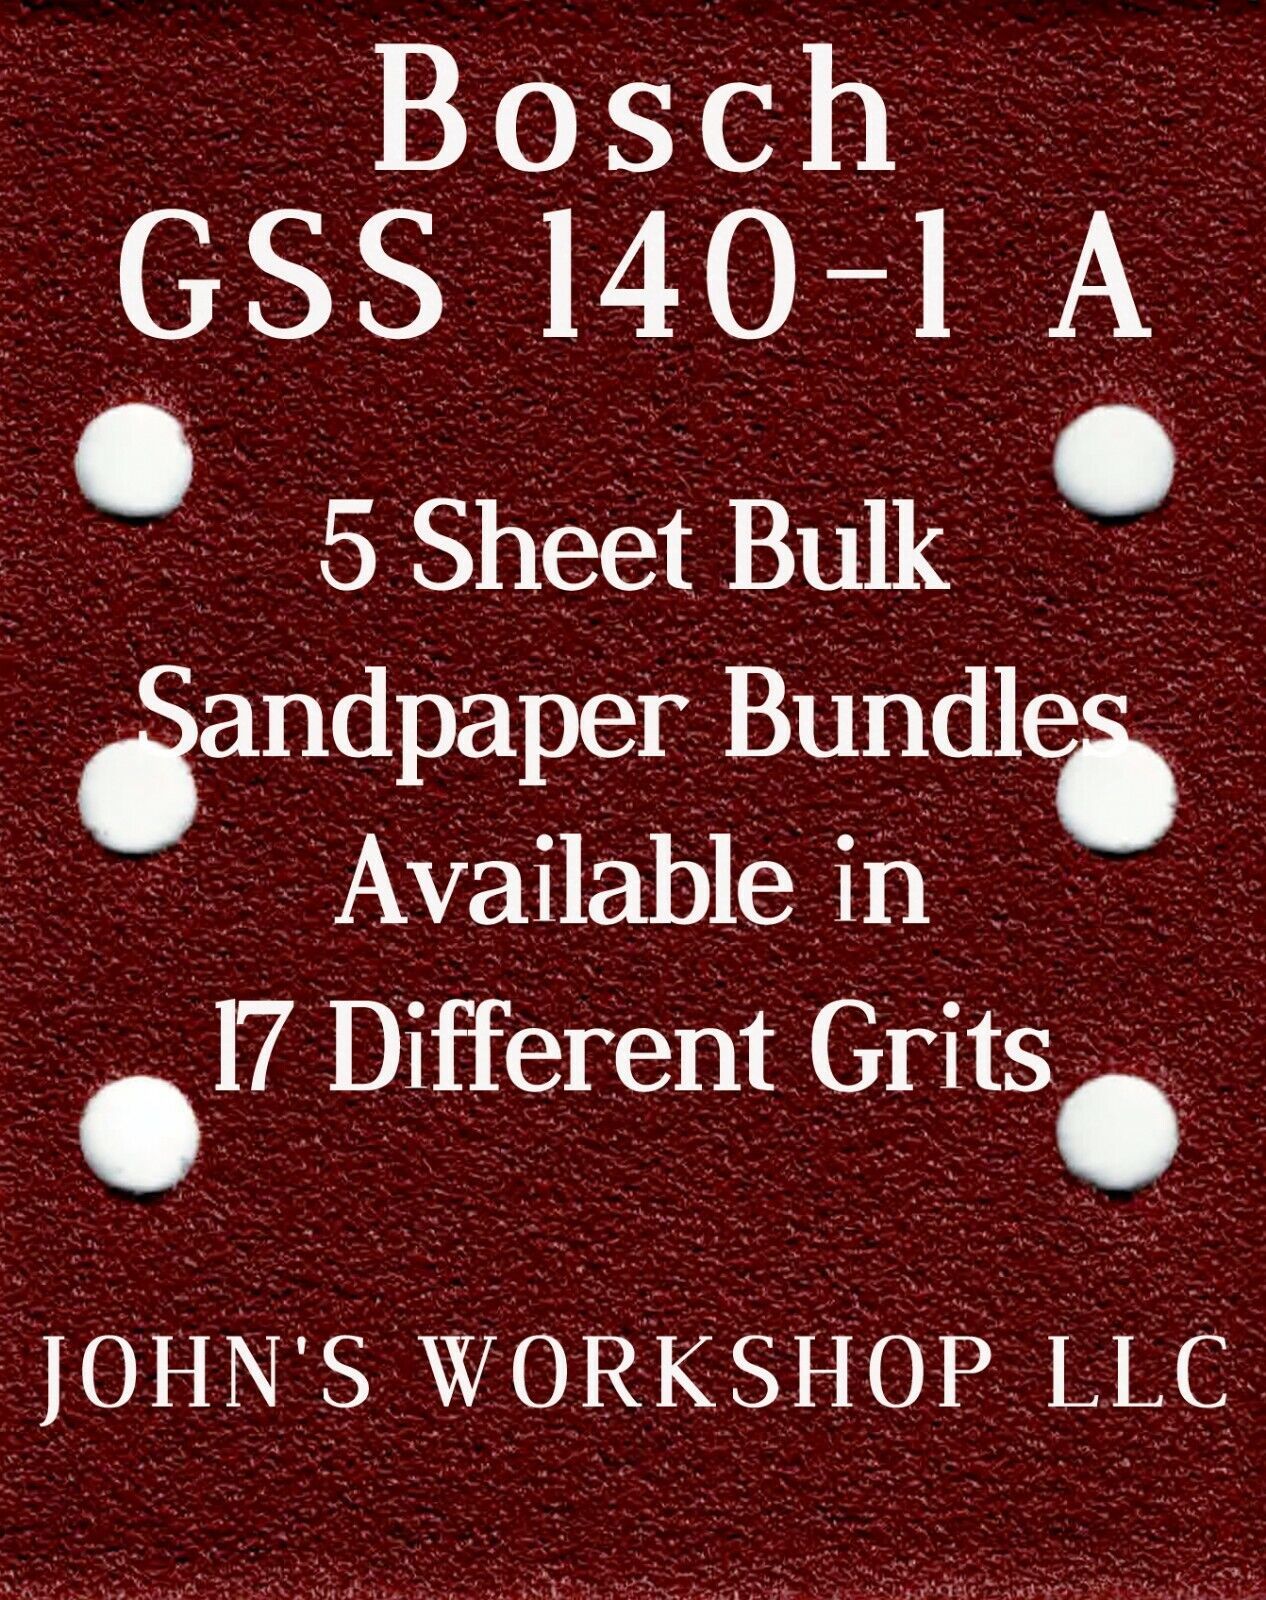 Bosch GSS 140-1 A - 1/4 Sheet - 17 Grits - No-Slip - 5 Sandpaper Bulk Bundles - $4.99